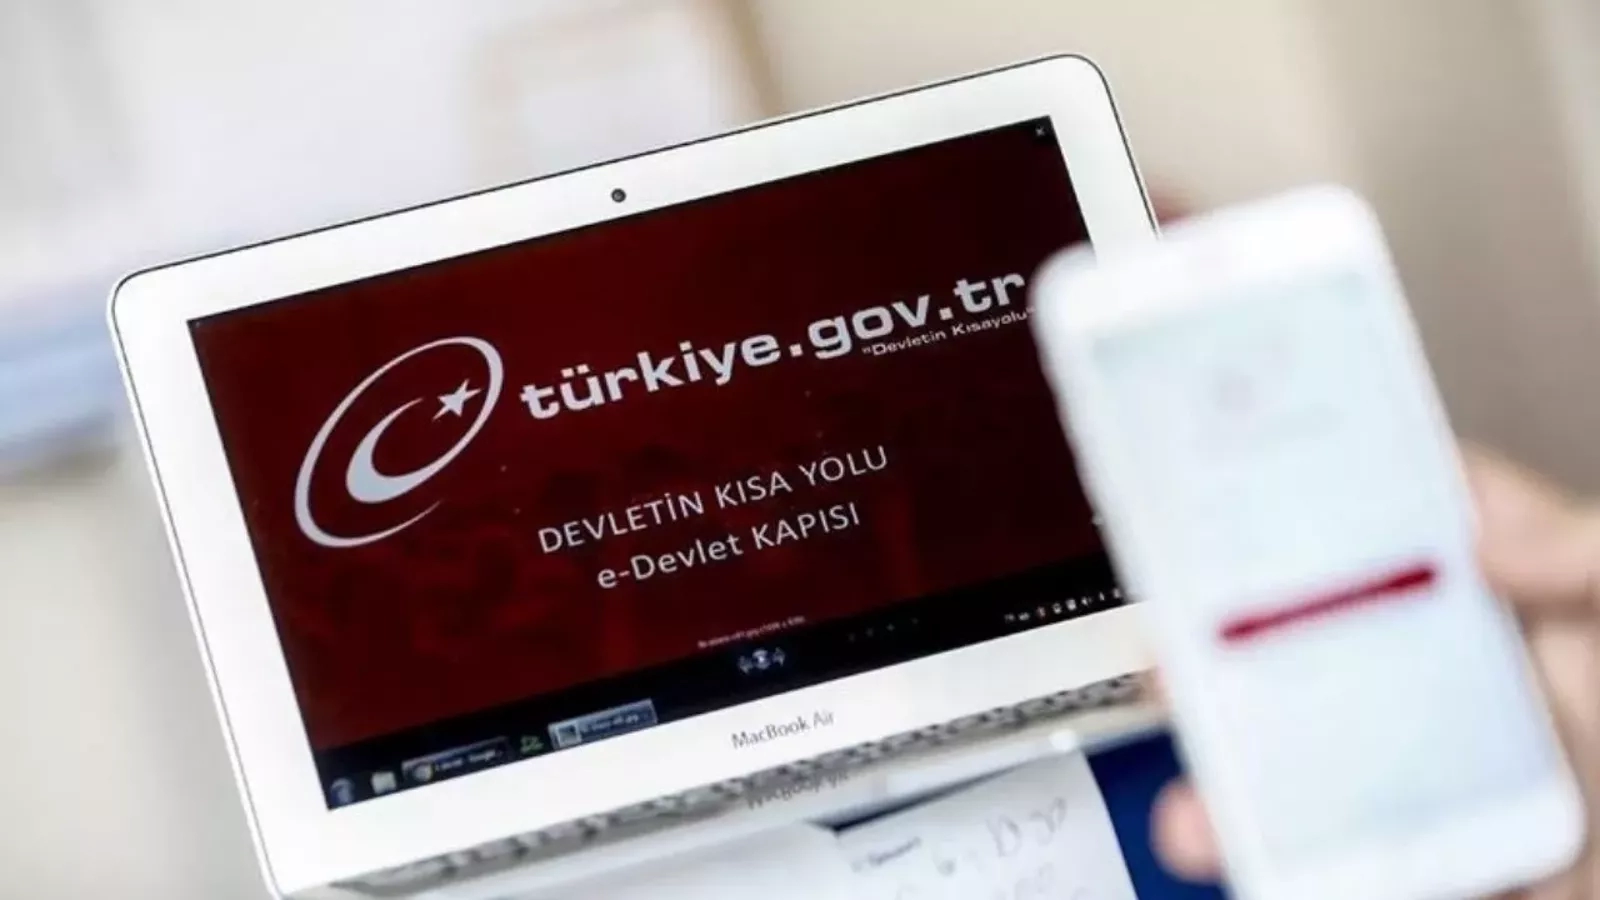 تجنب تنزيل تطبيق بوابة الحكومة التركية إي دولت من أي إعلانات ممولة